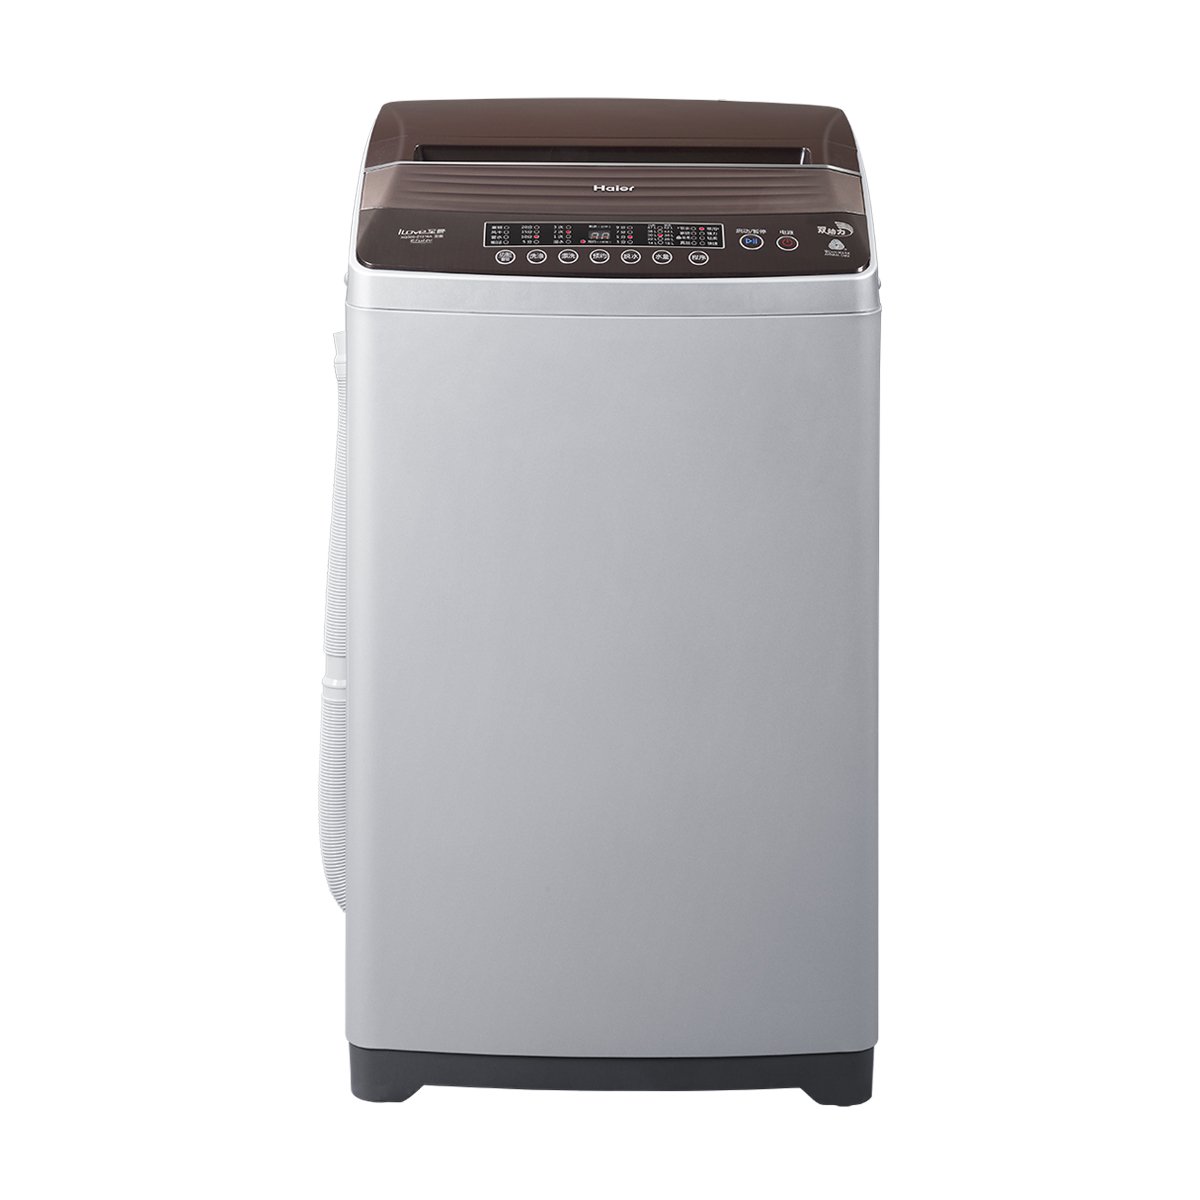 海尔Haier洗衣机 XQS60-Z1216A 说明书